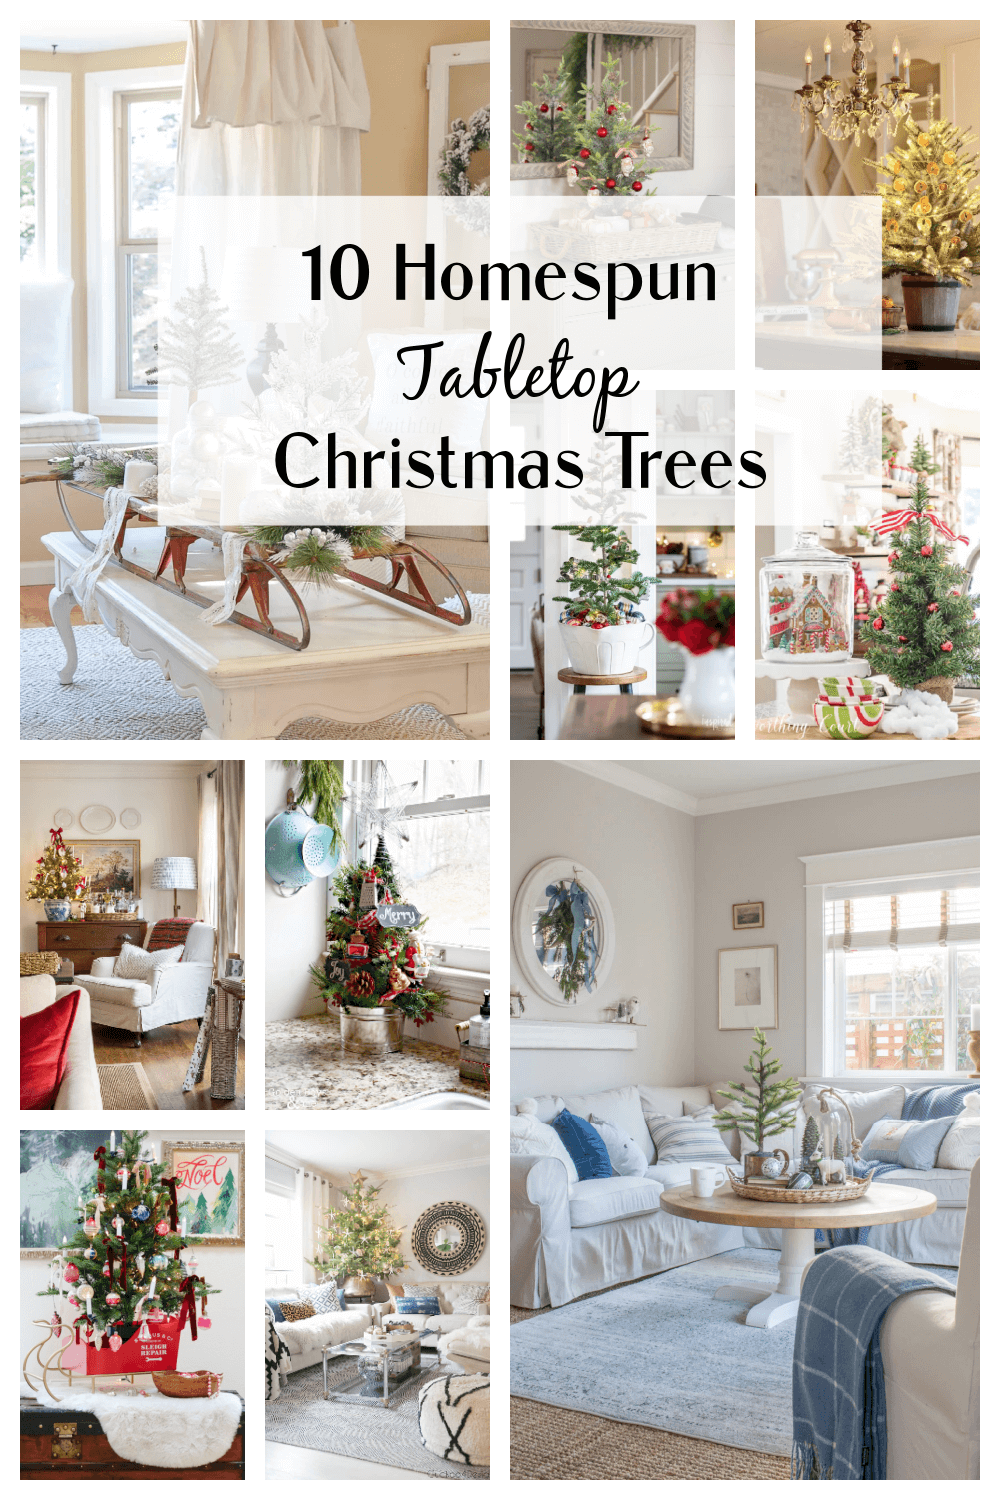 10 Homespun Tabletop Christmas Trees